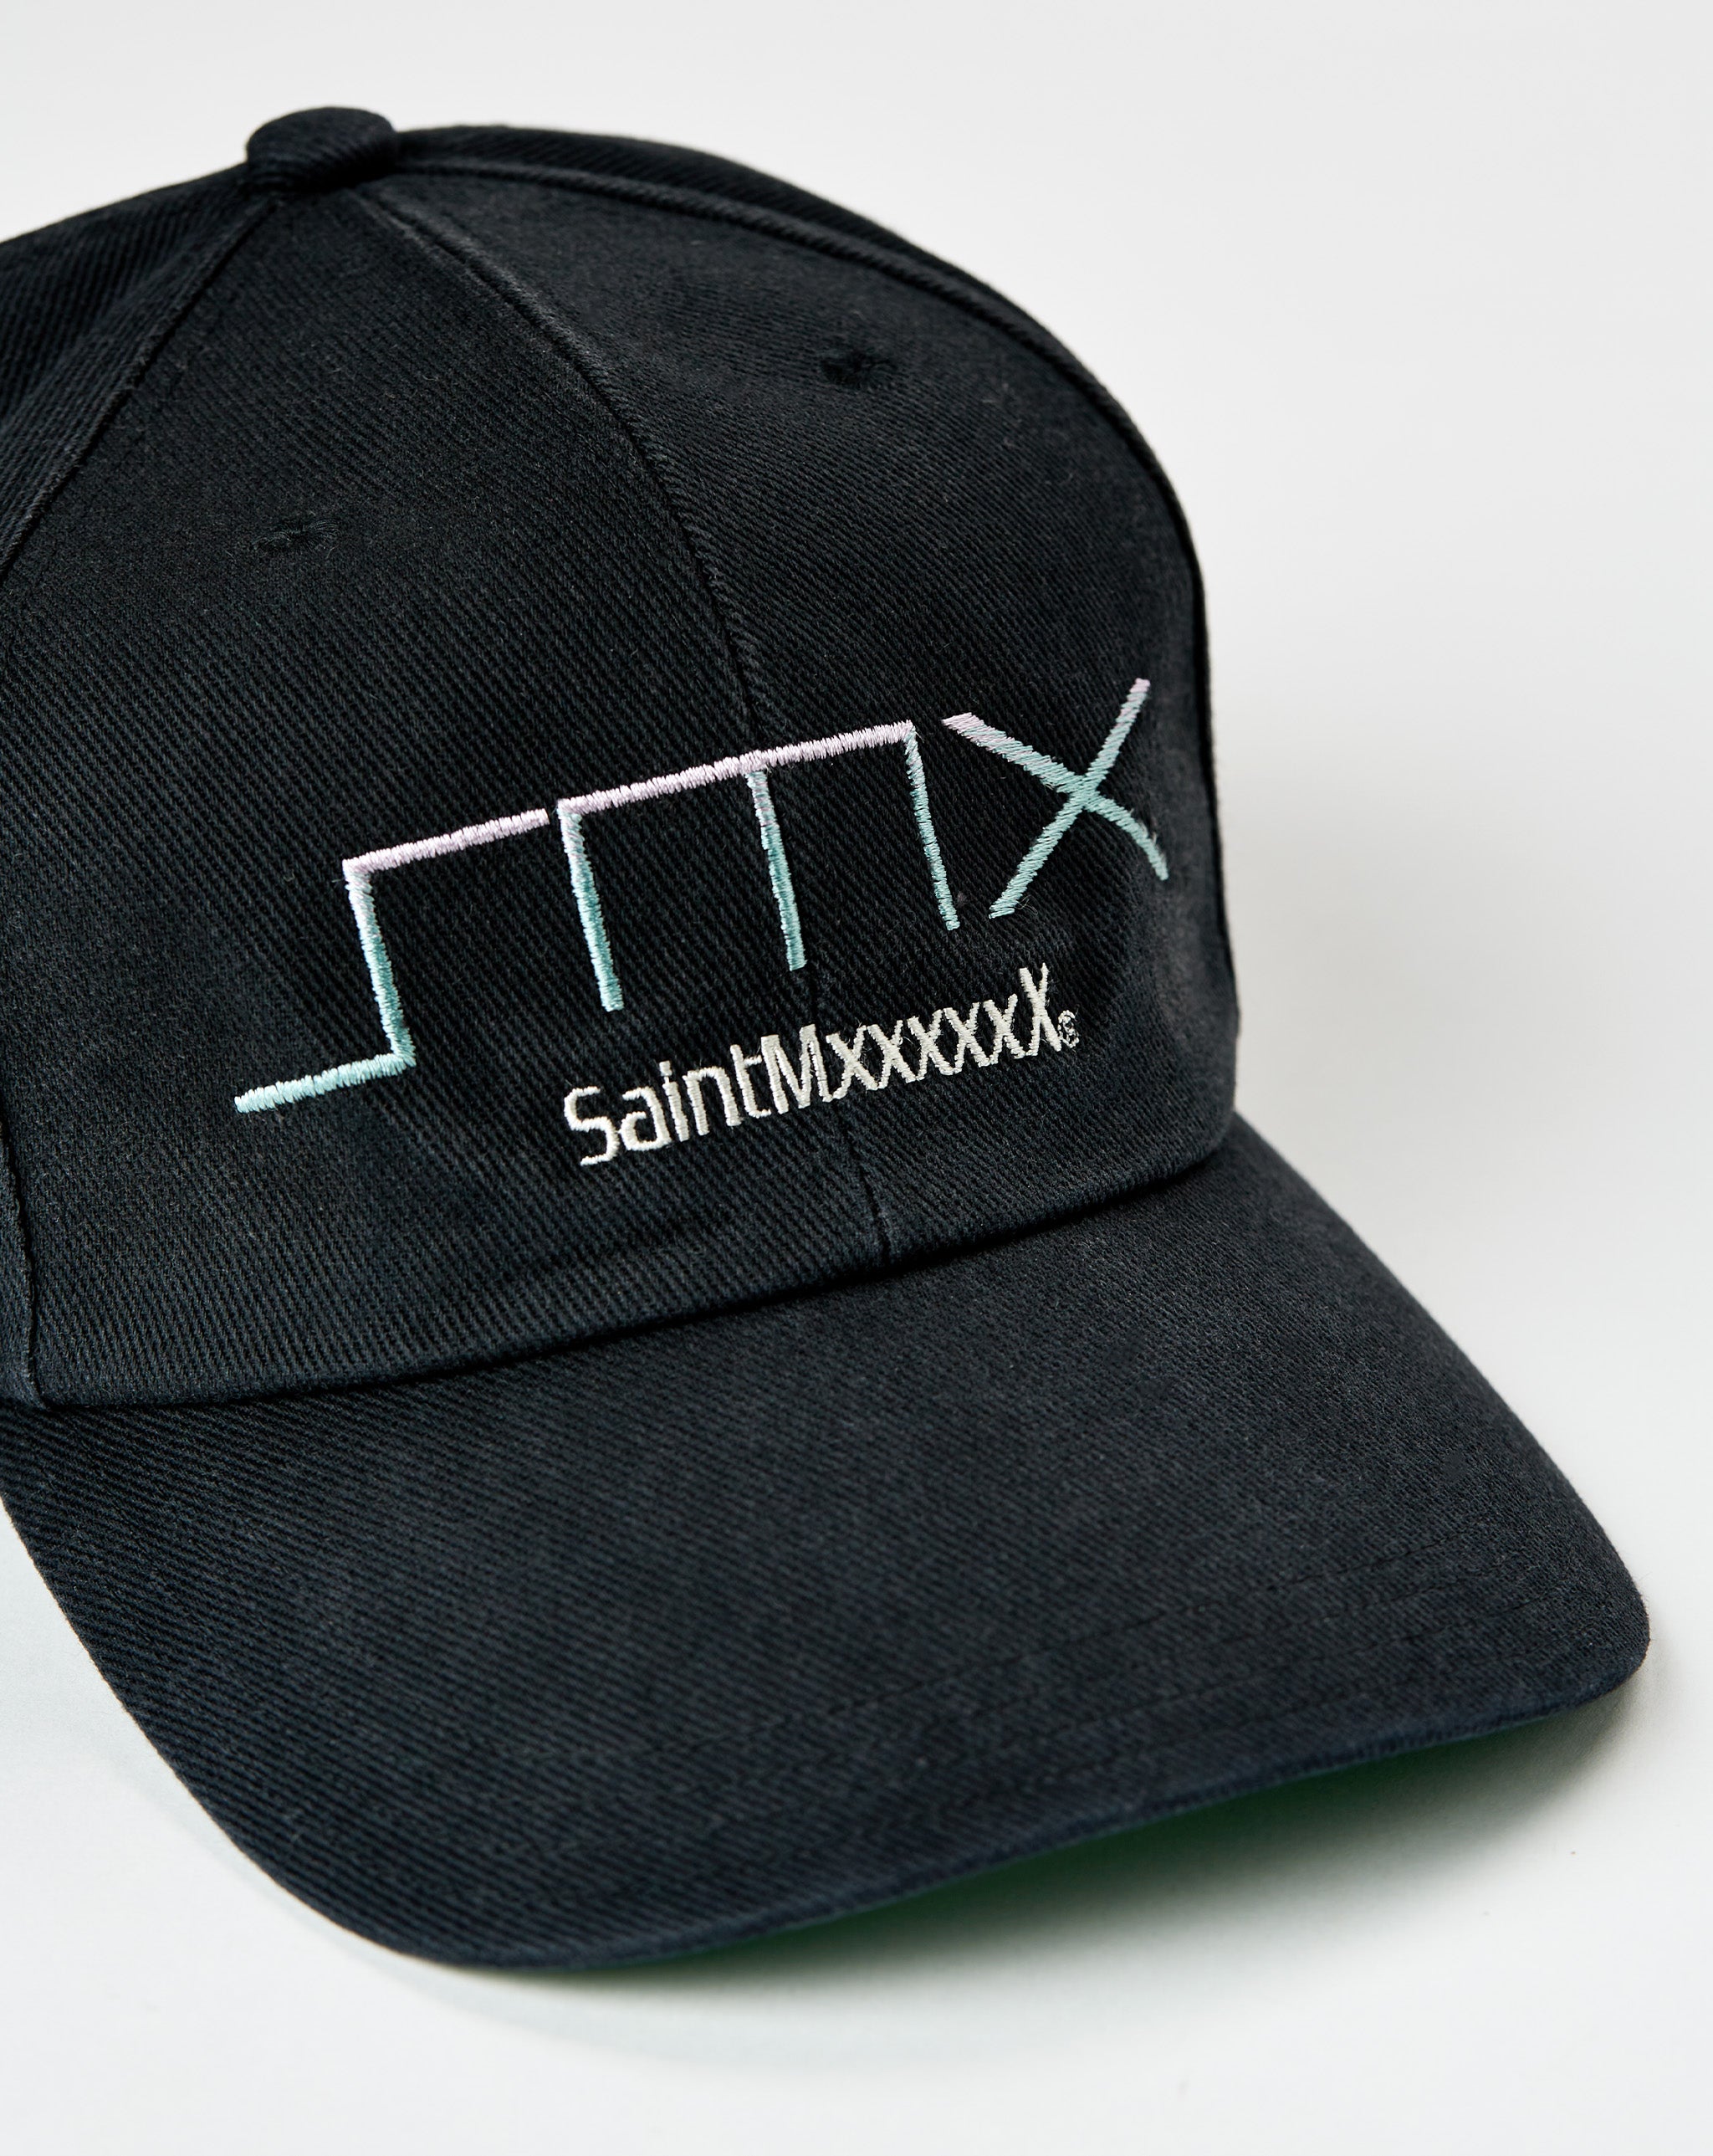 Saint Michael SMx6 Hat  - Cheap Cerbe Jordan outlet